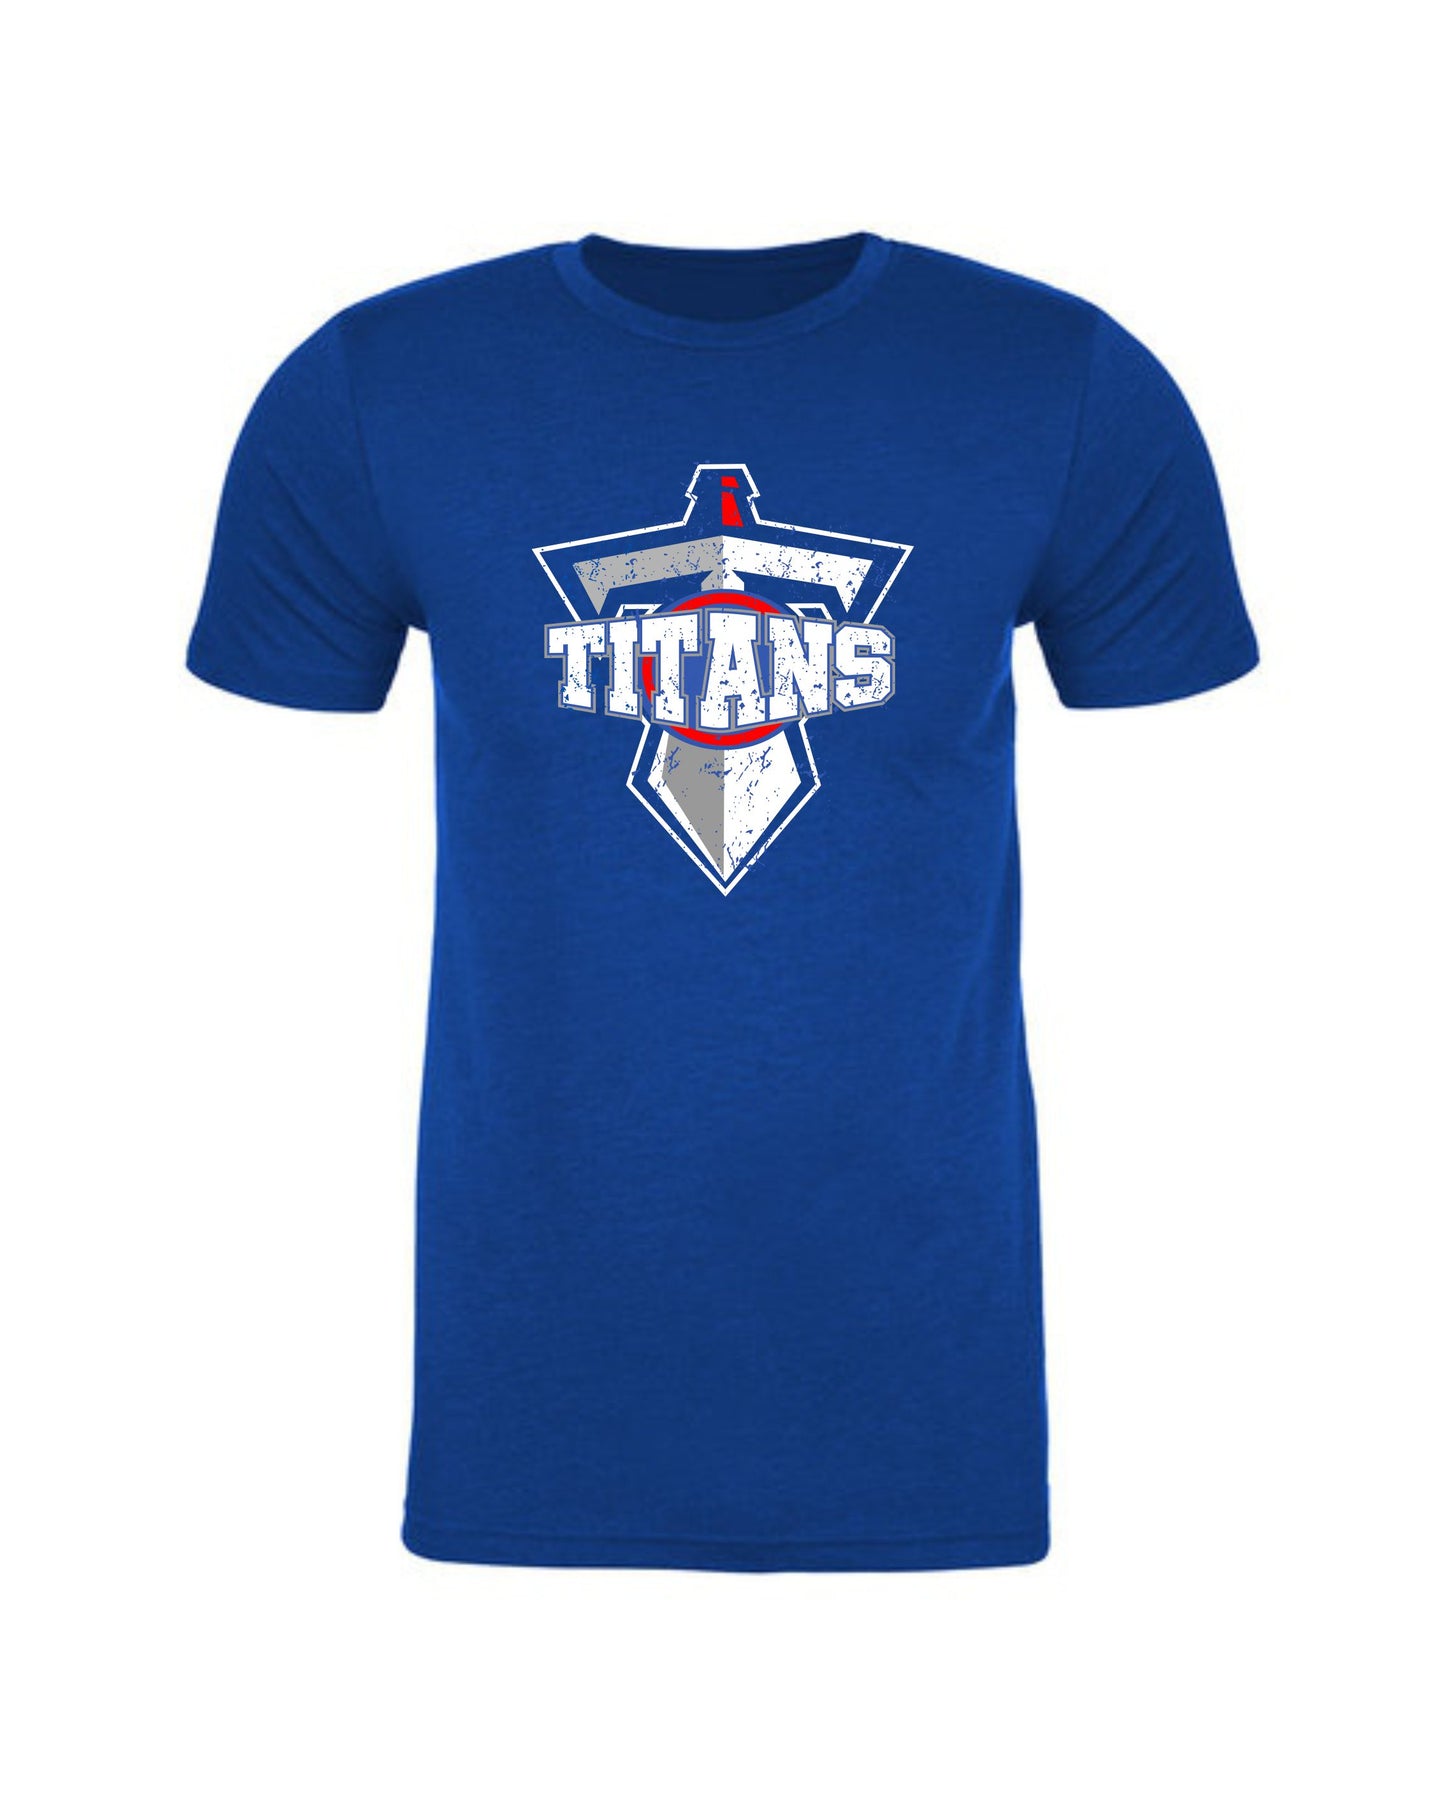 Titans Distressed Sword T-Shirt